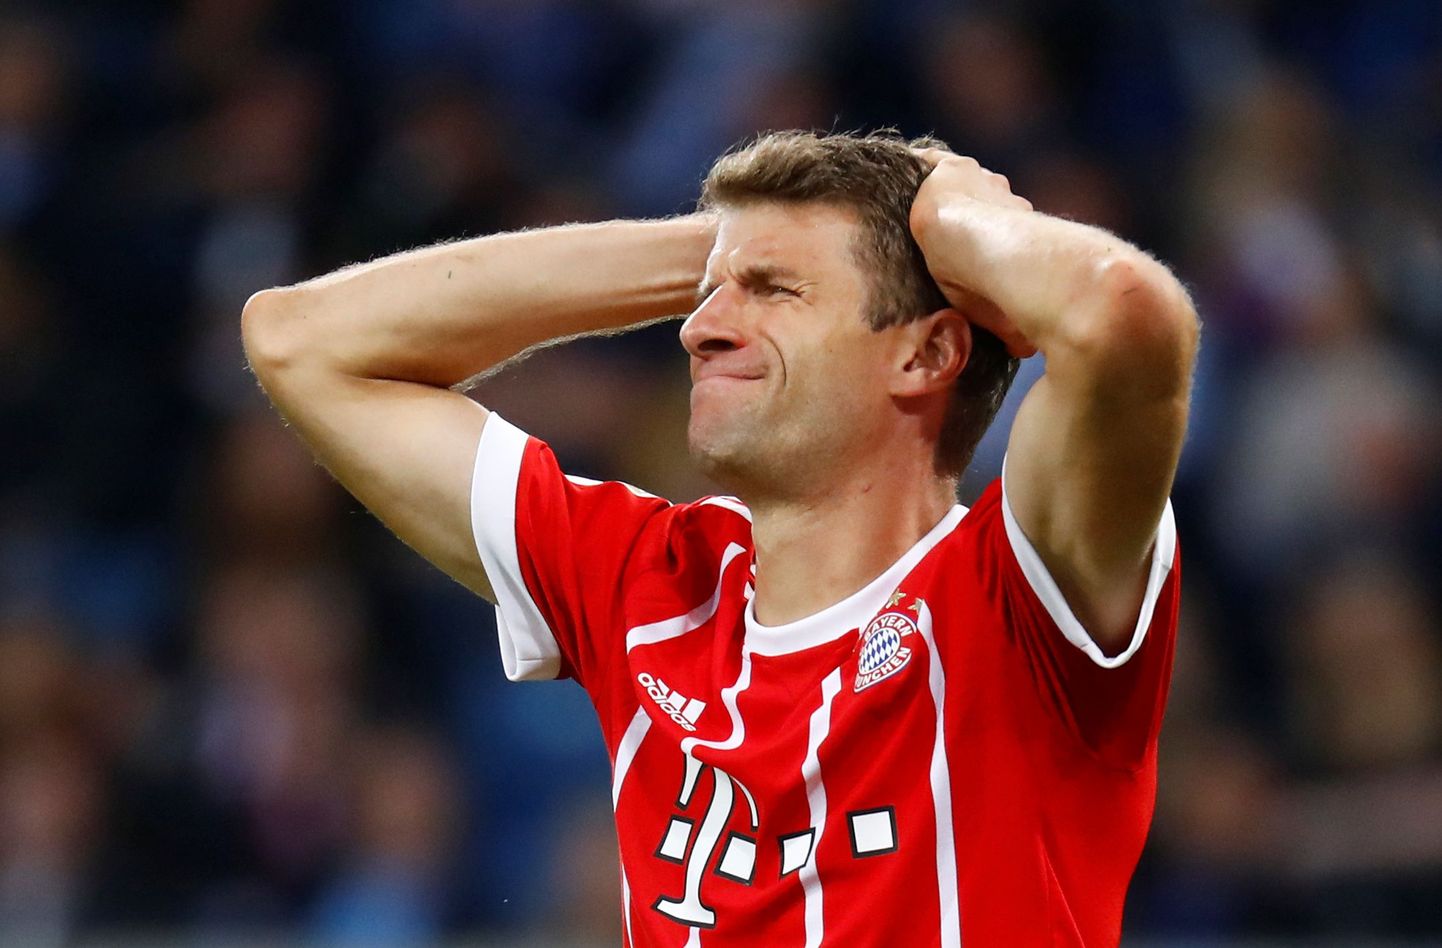 Müncheni Bayerni edurivimees Thomas Müller hoiab kahe käega peast kinni.